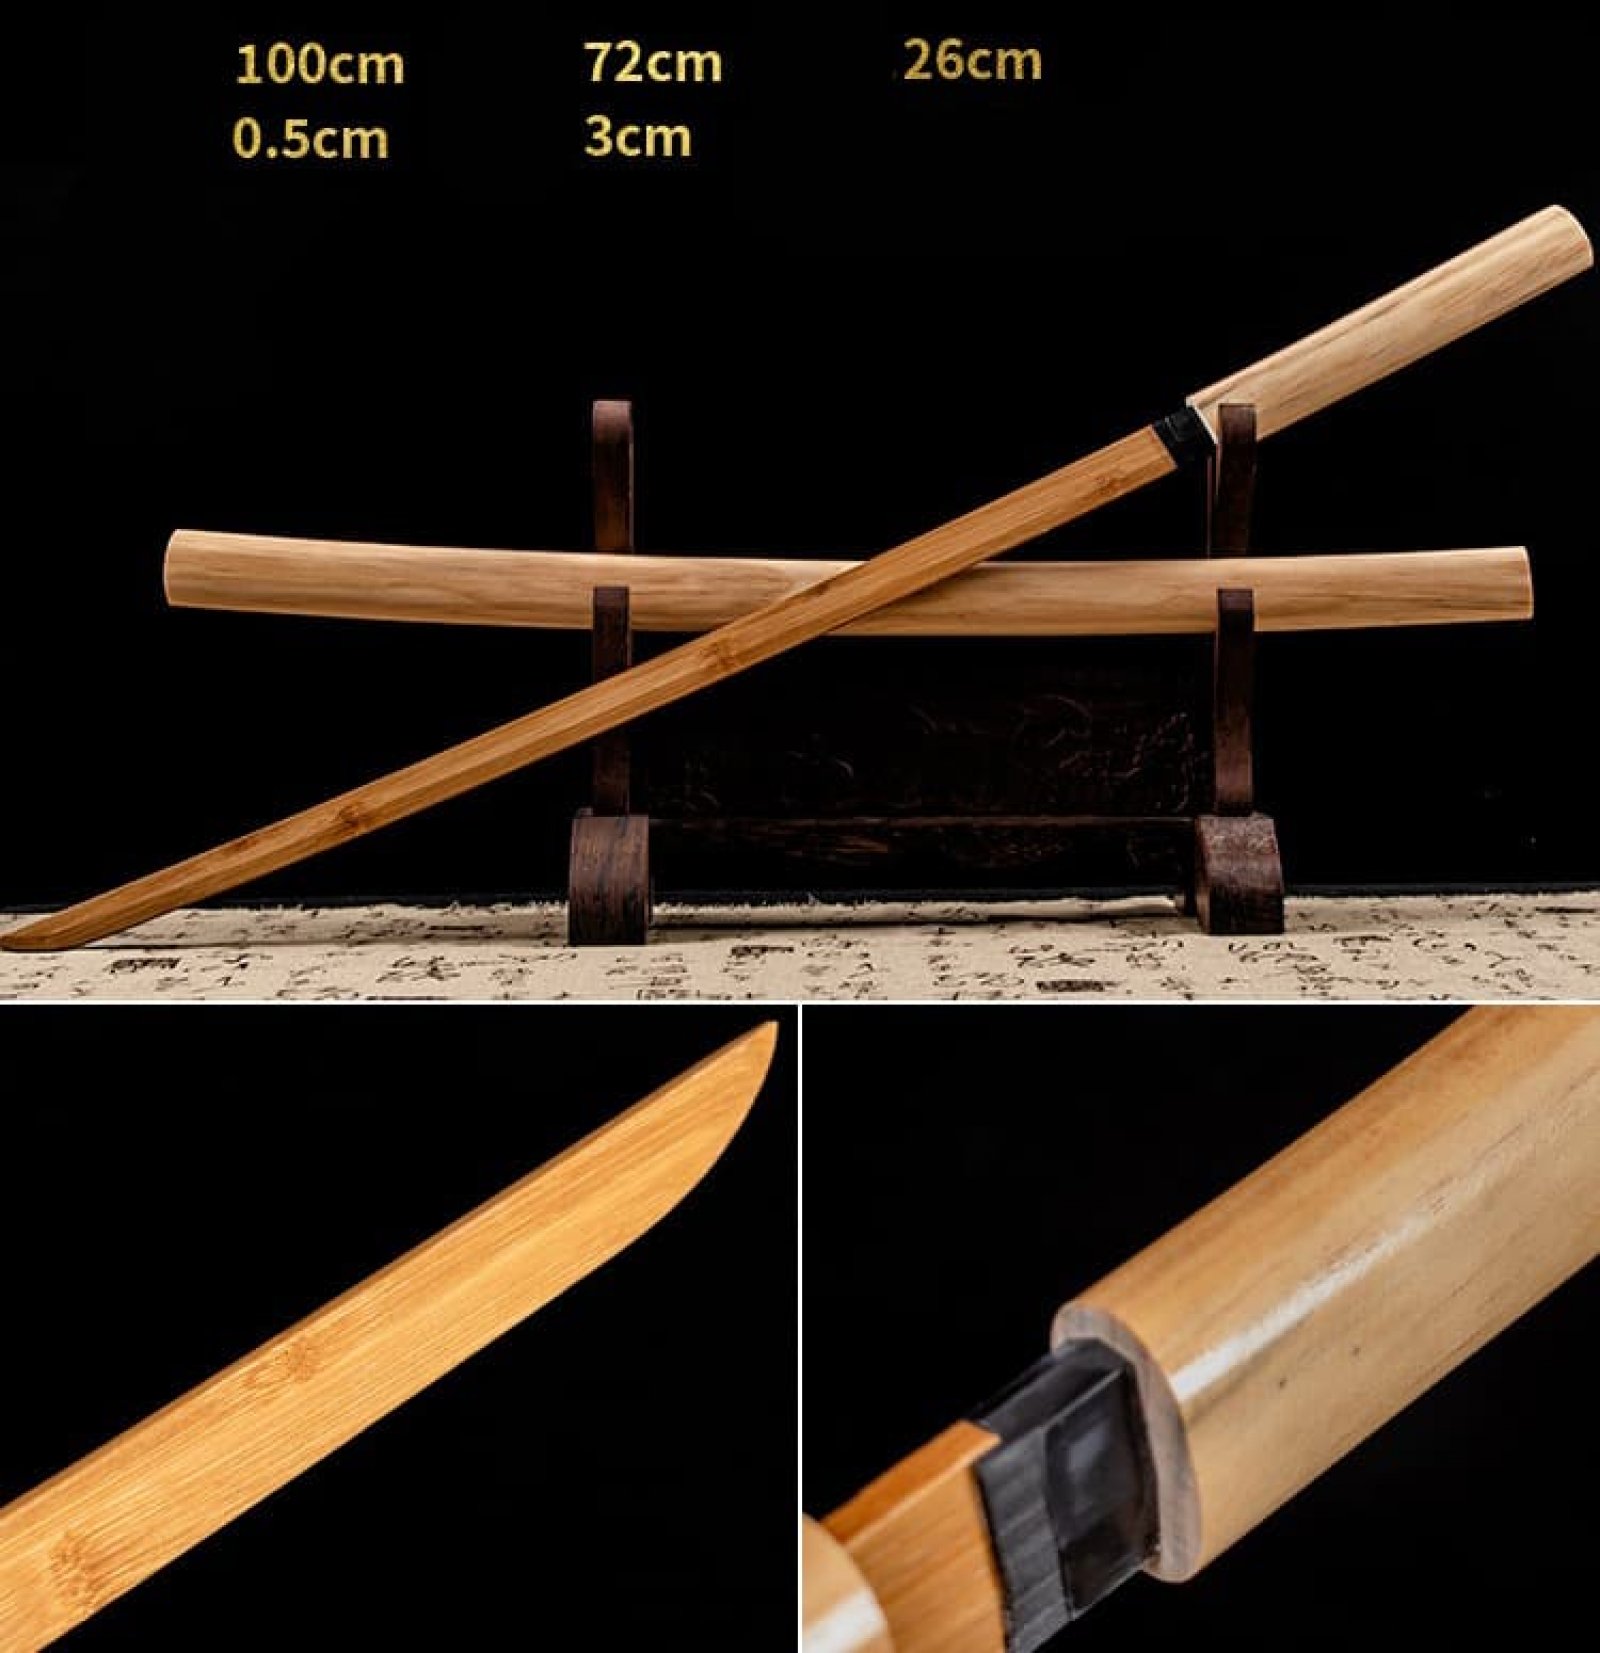 Kiếm gỗ samurai nhật bản 004